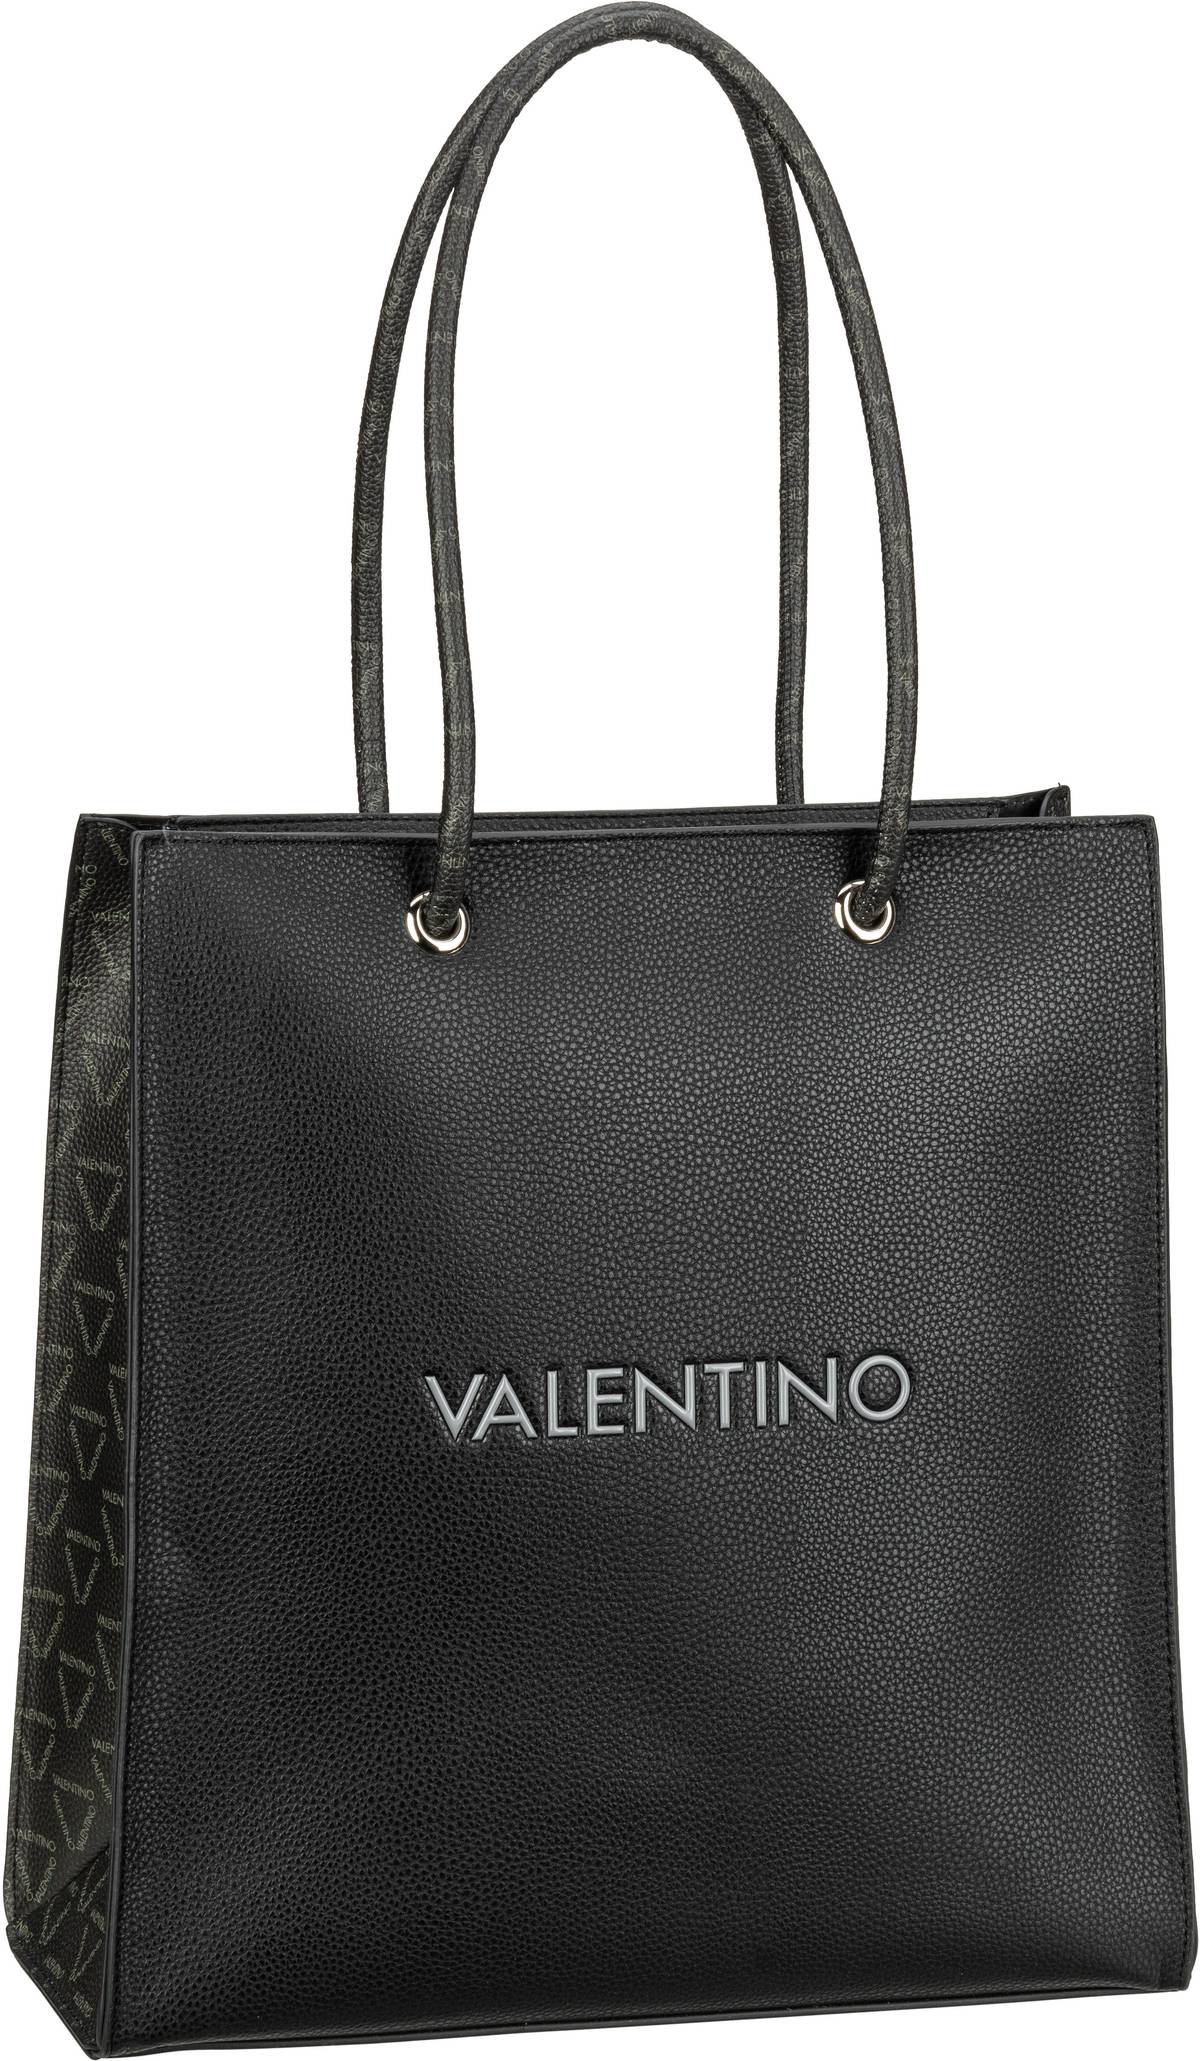 Valentino Jelly Shopping W01 - Nero/Multicolor